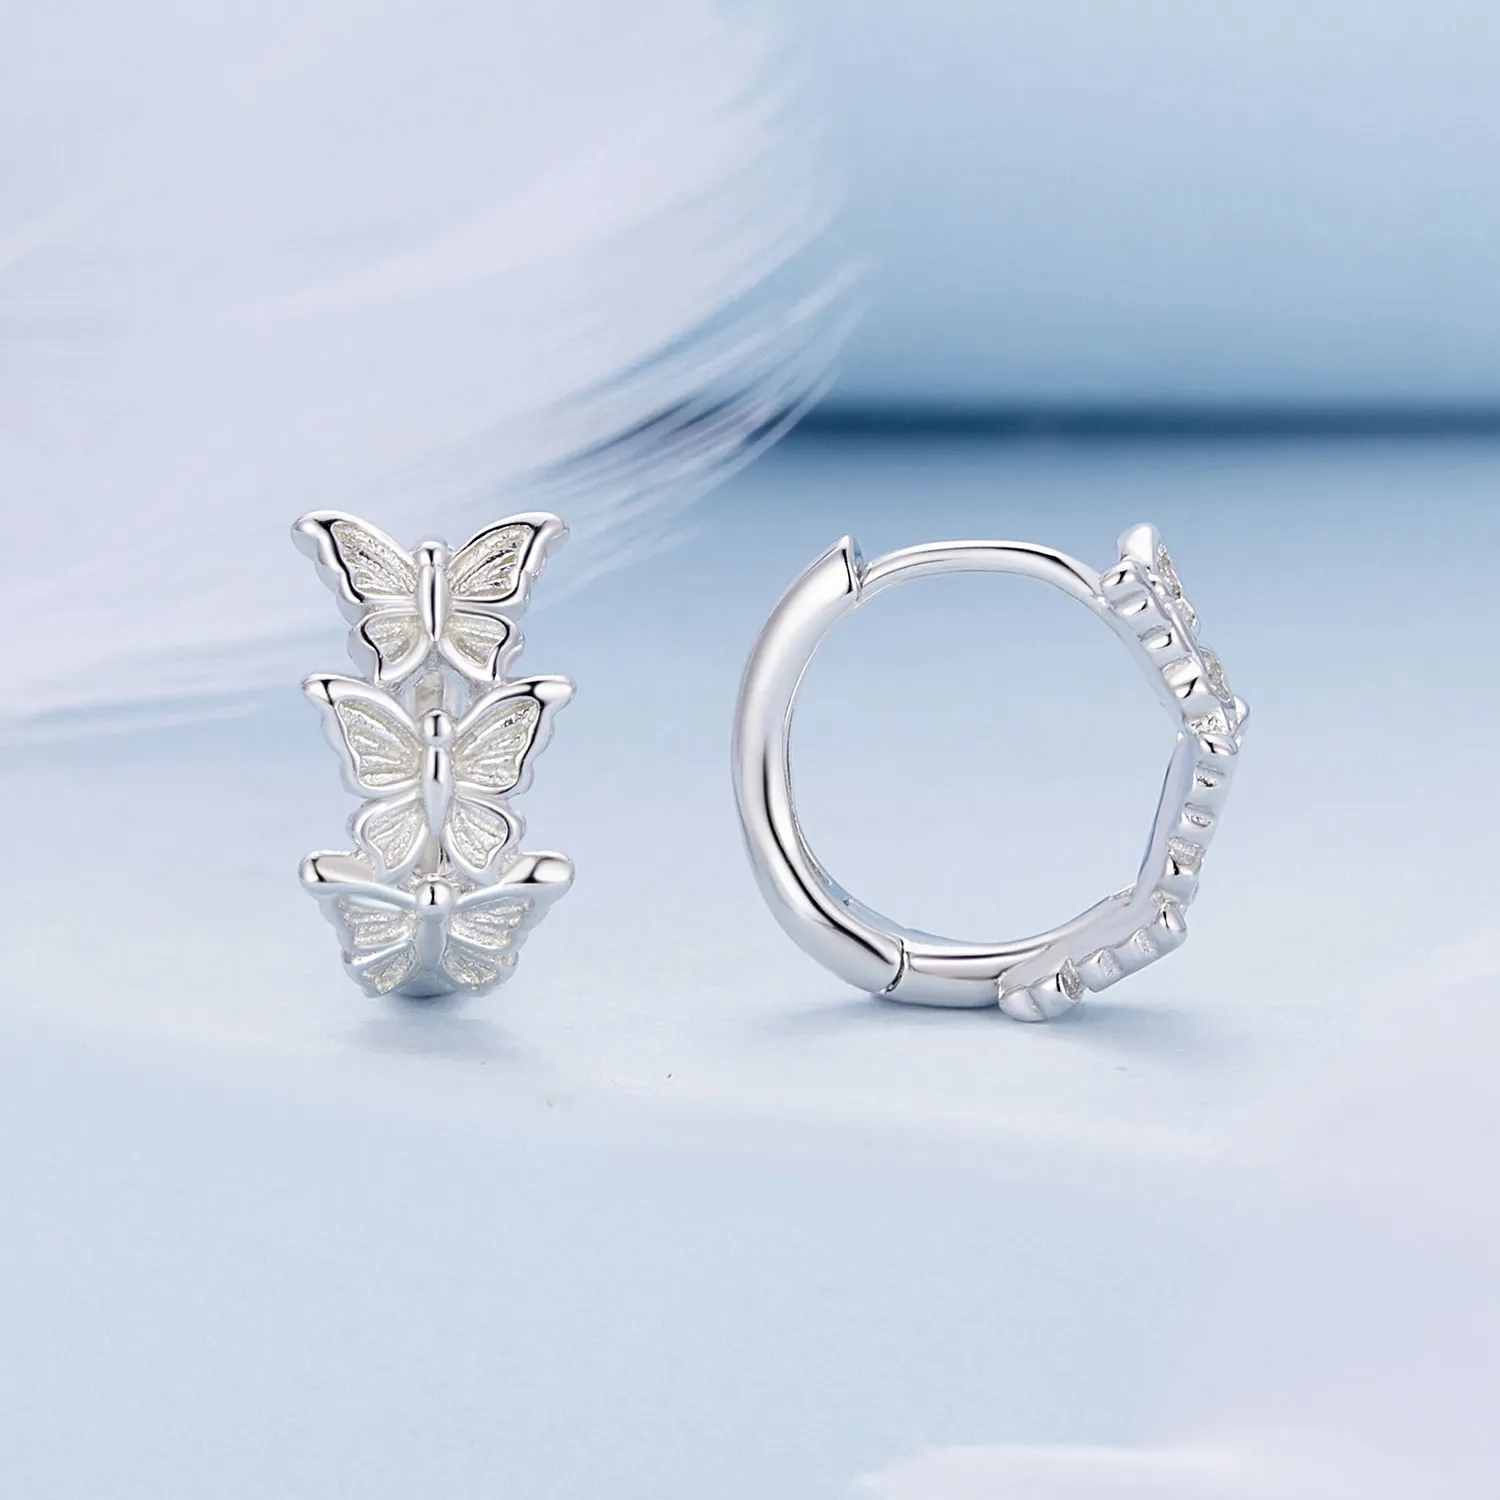 Pandora Style Butterfly Hoop Earrings - BSE908